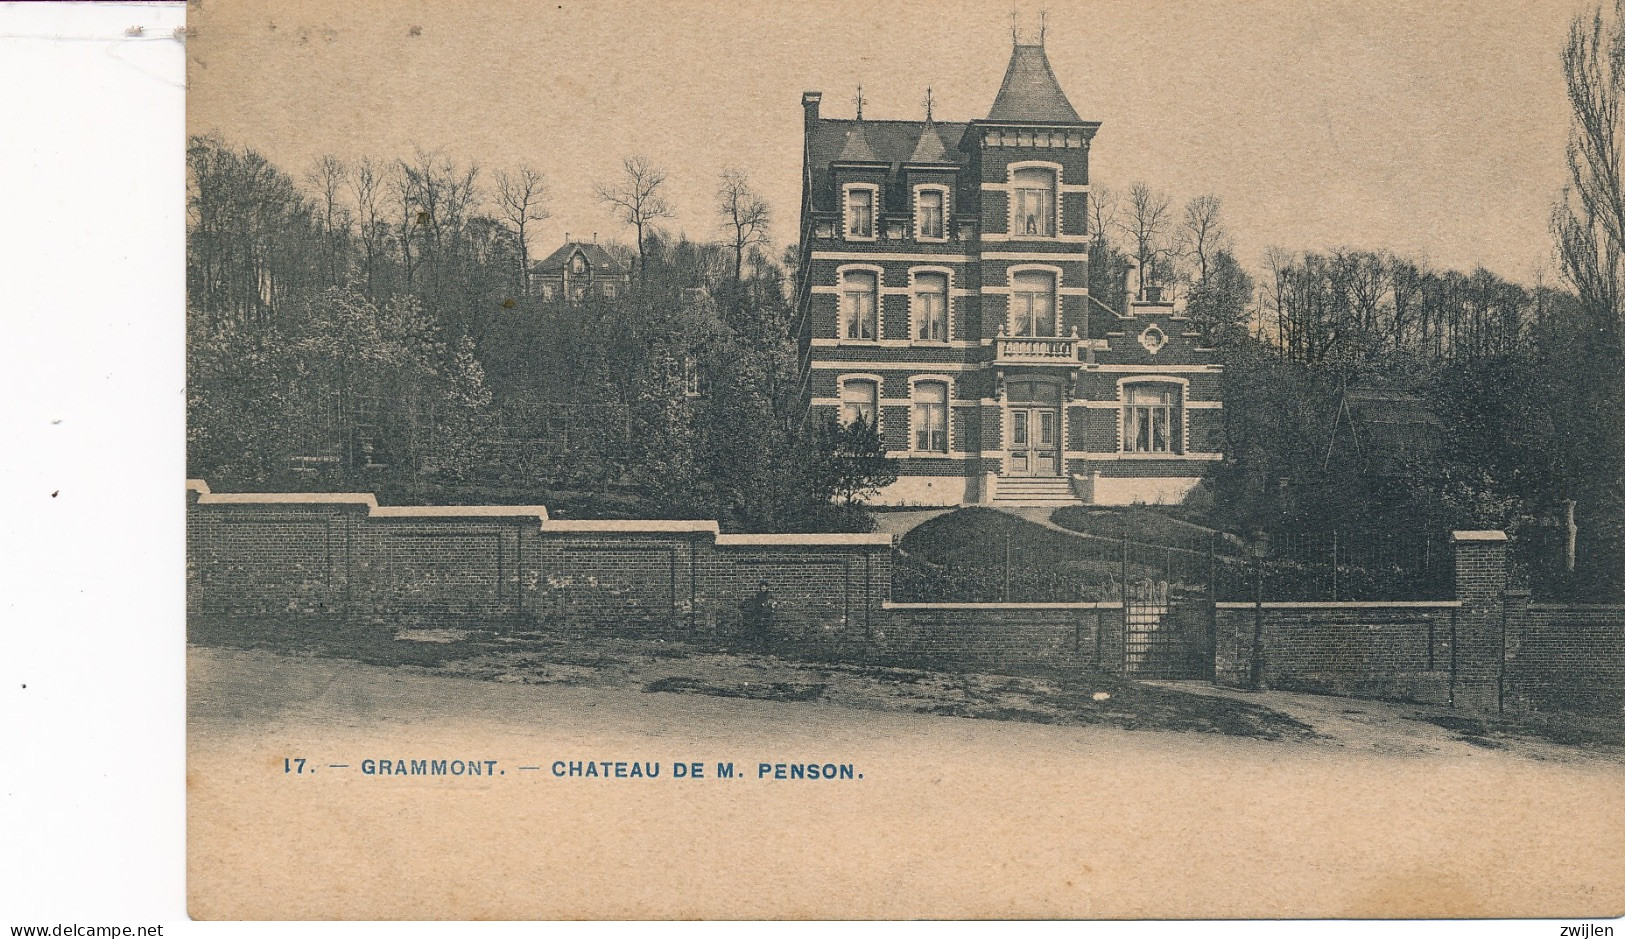 GERAARDSBERGEN GRAMMONT CHATEAU DE M. PENSON KASTEEL DE VESTEN - Geraardsbergen